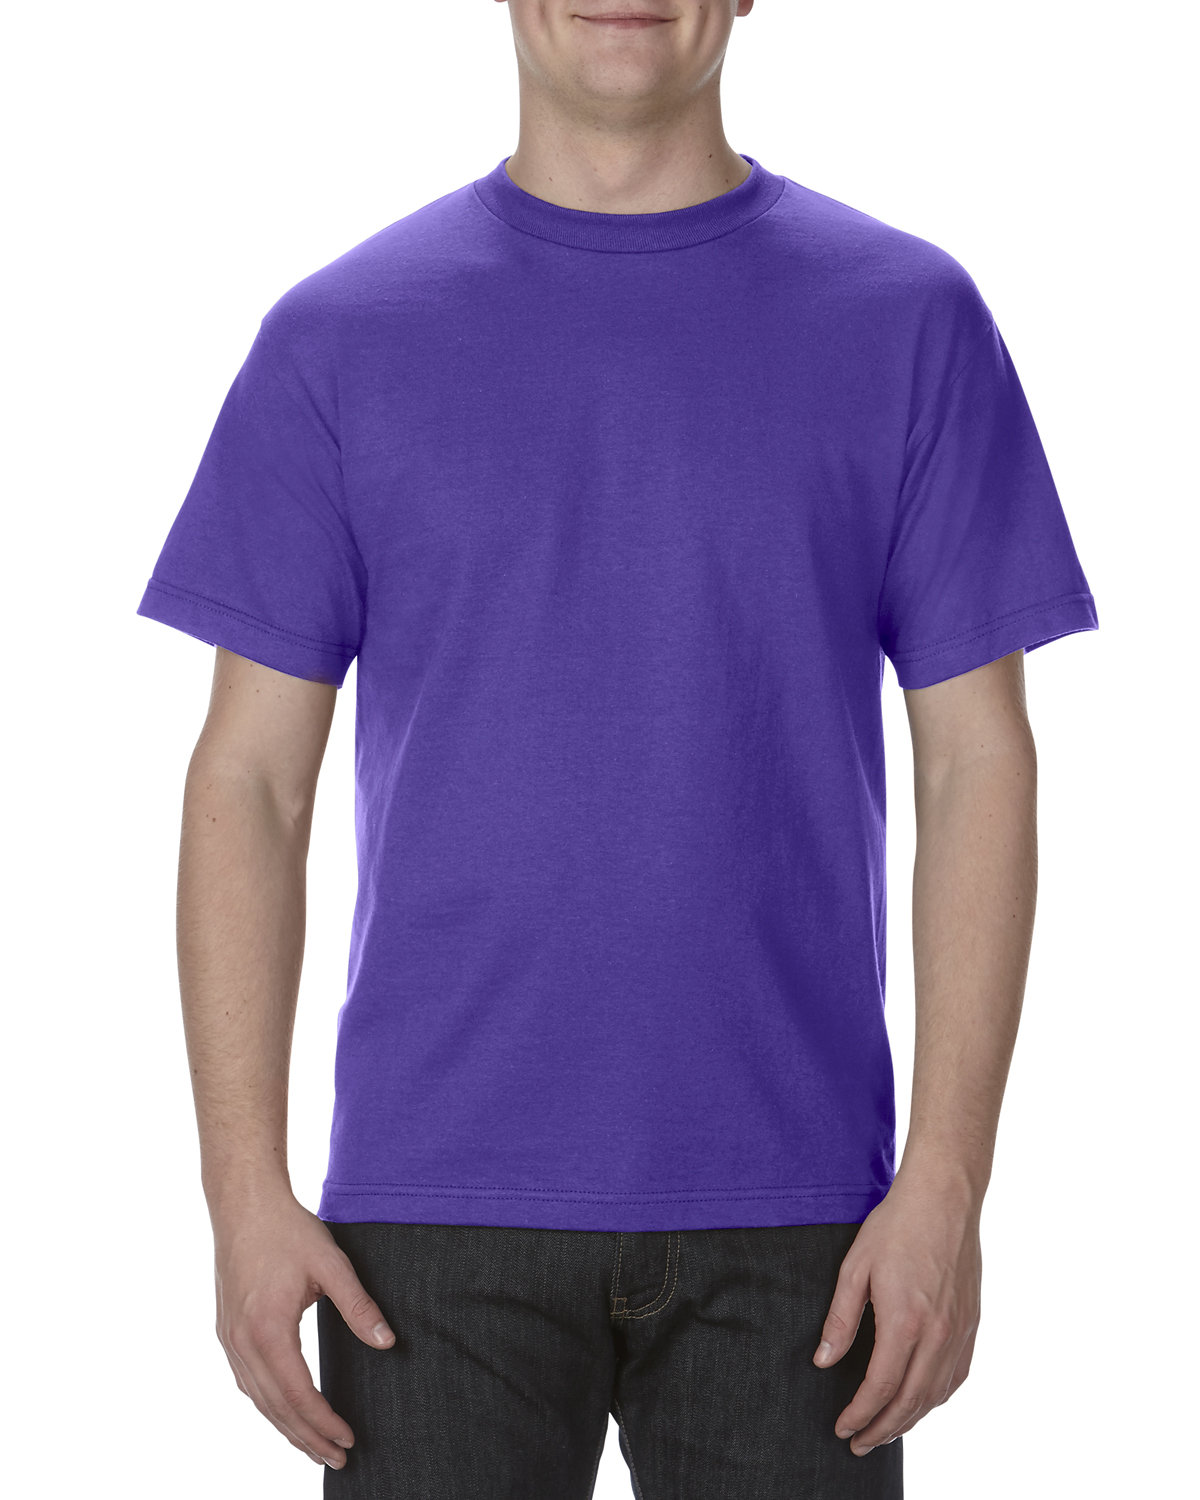 Alstyle Adult 6.0 oz., 100% Cotton T-Shirt PURPLE 